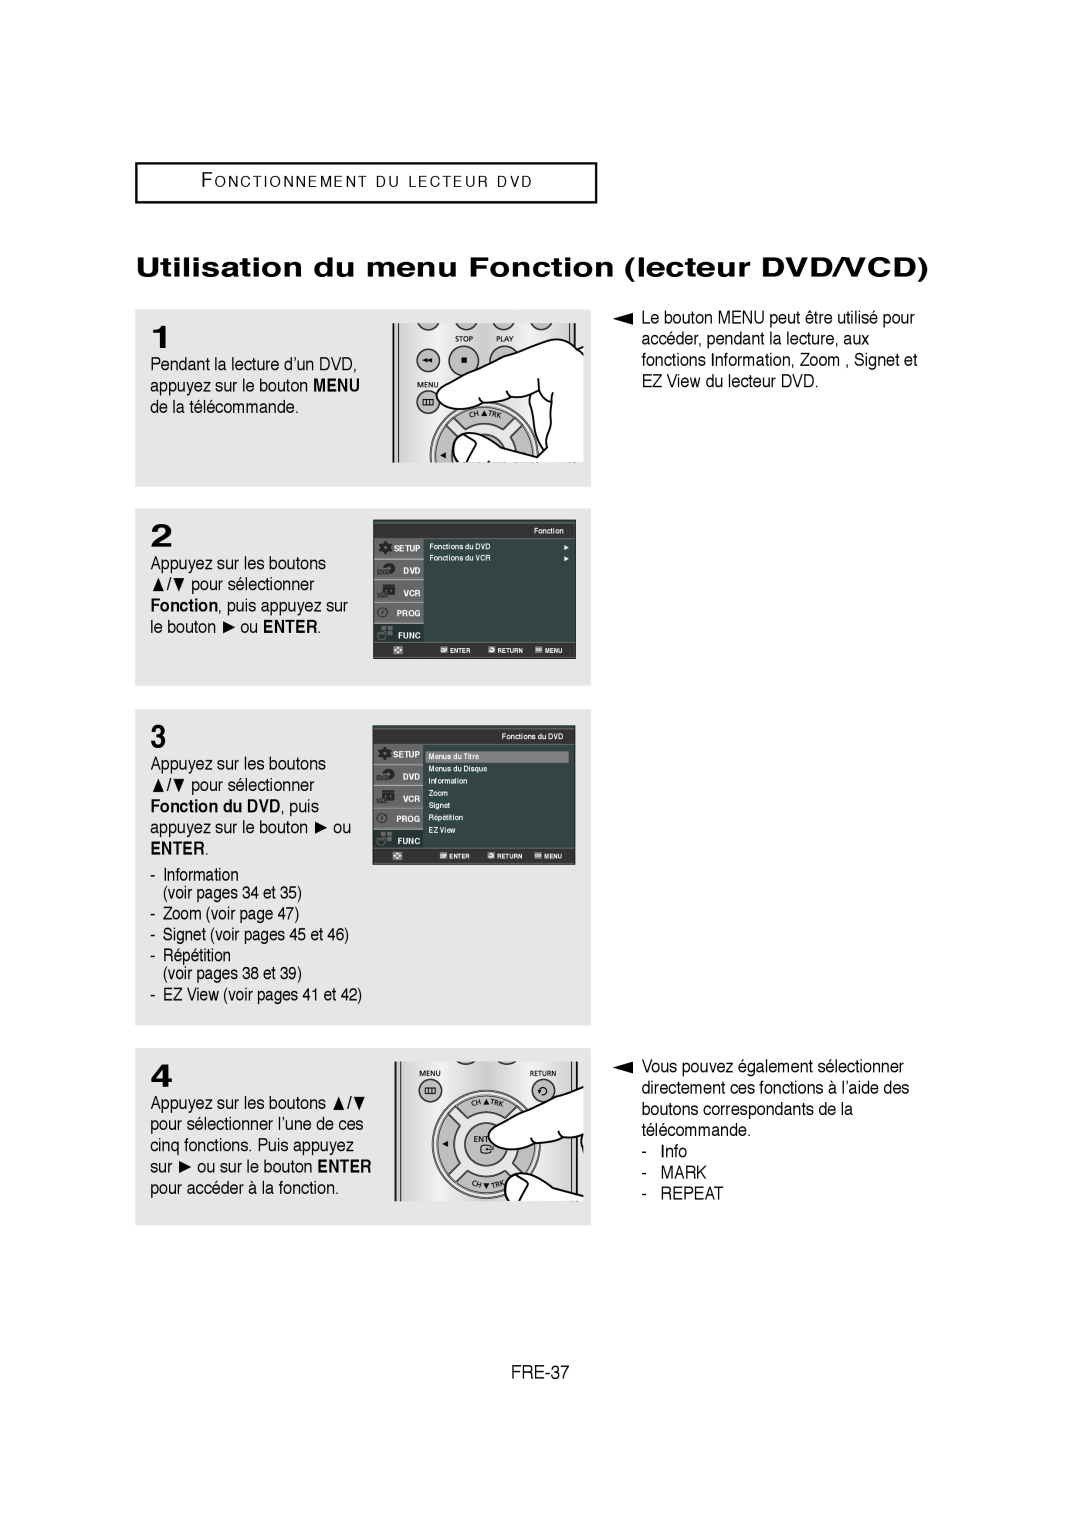 Samsung AK68-01304A, V6700-XAC, 20070205090323359 Utilisation du menu Fonction lecteur DVD/VCD, FRE-37, Enter 